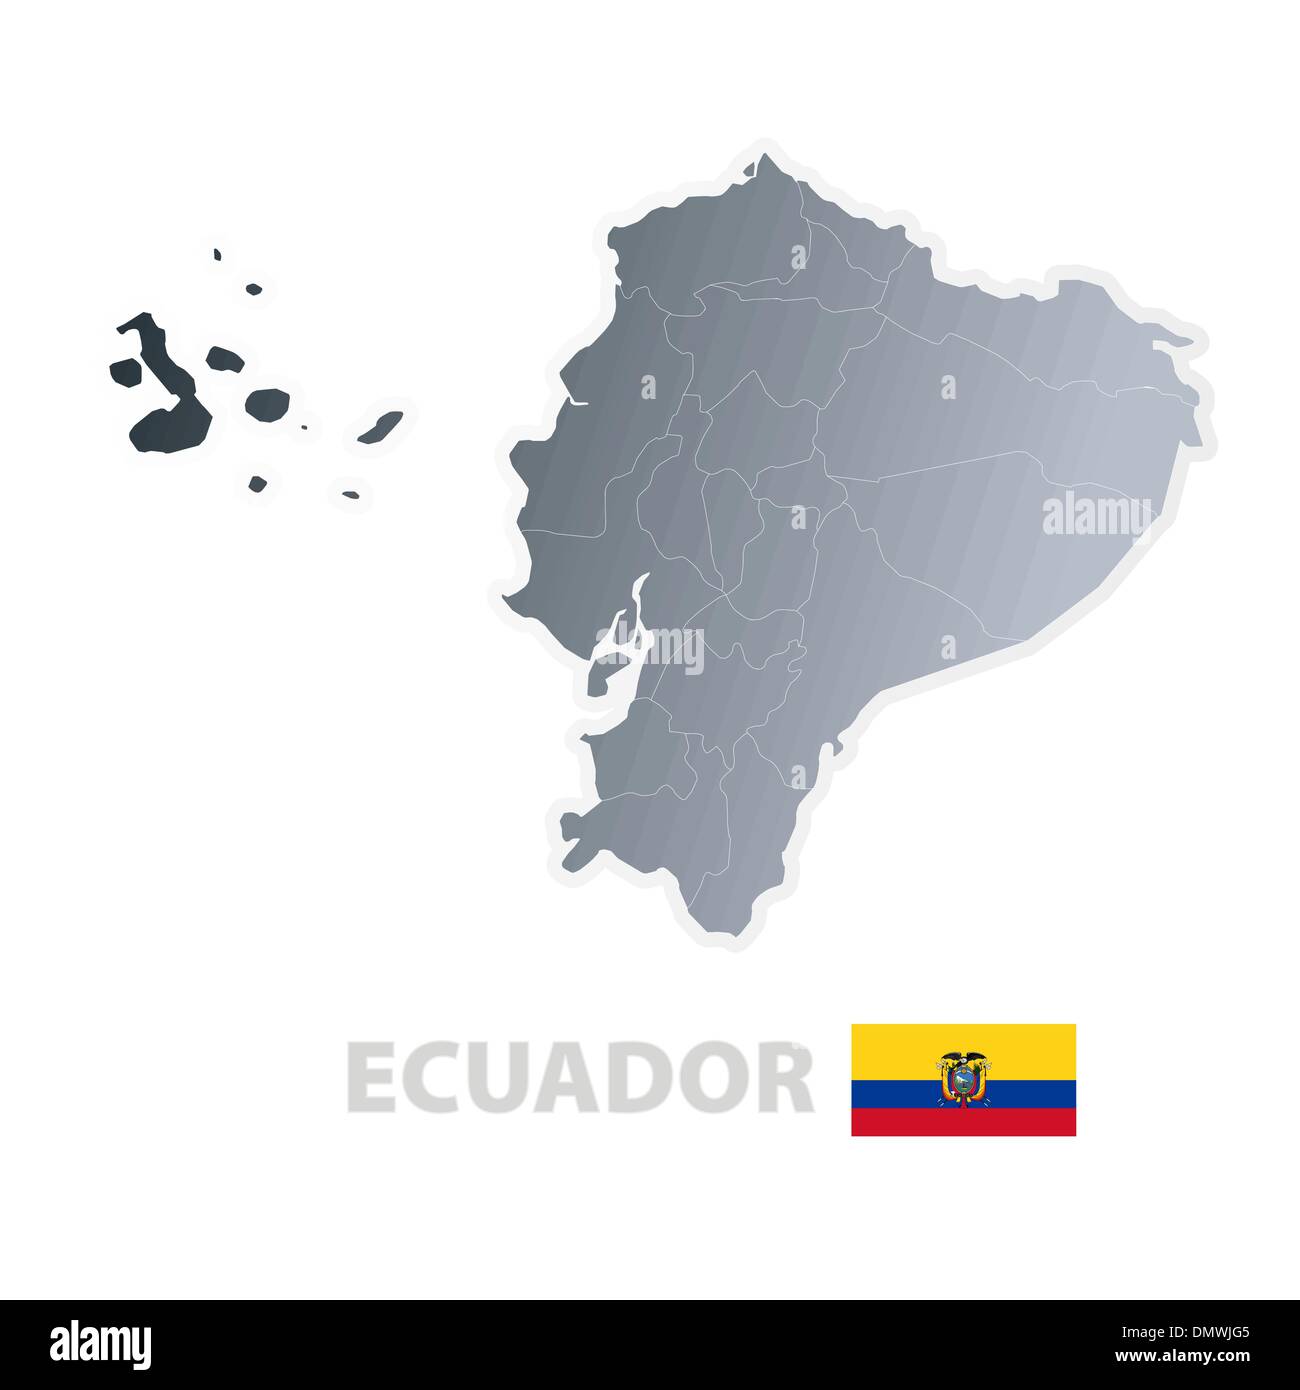 Ecuador map with official flag Stock Vector